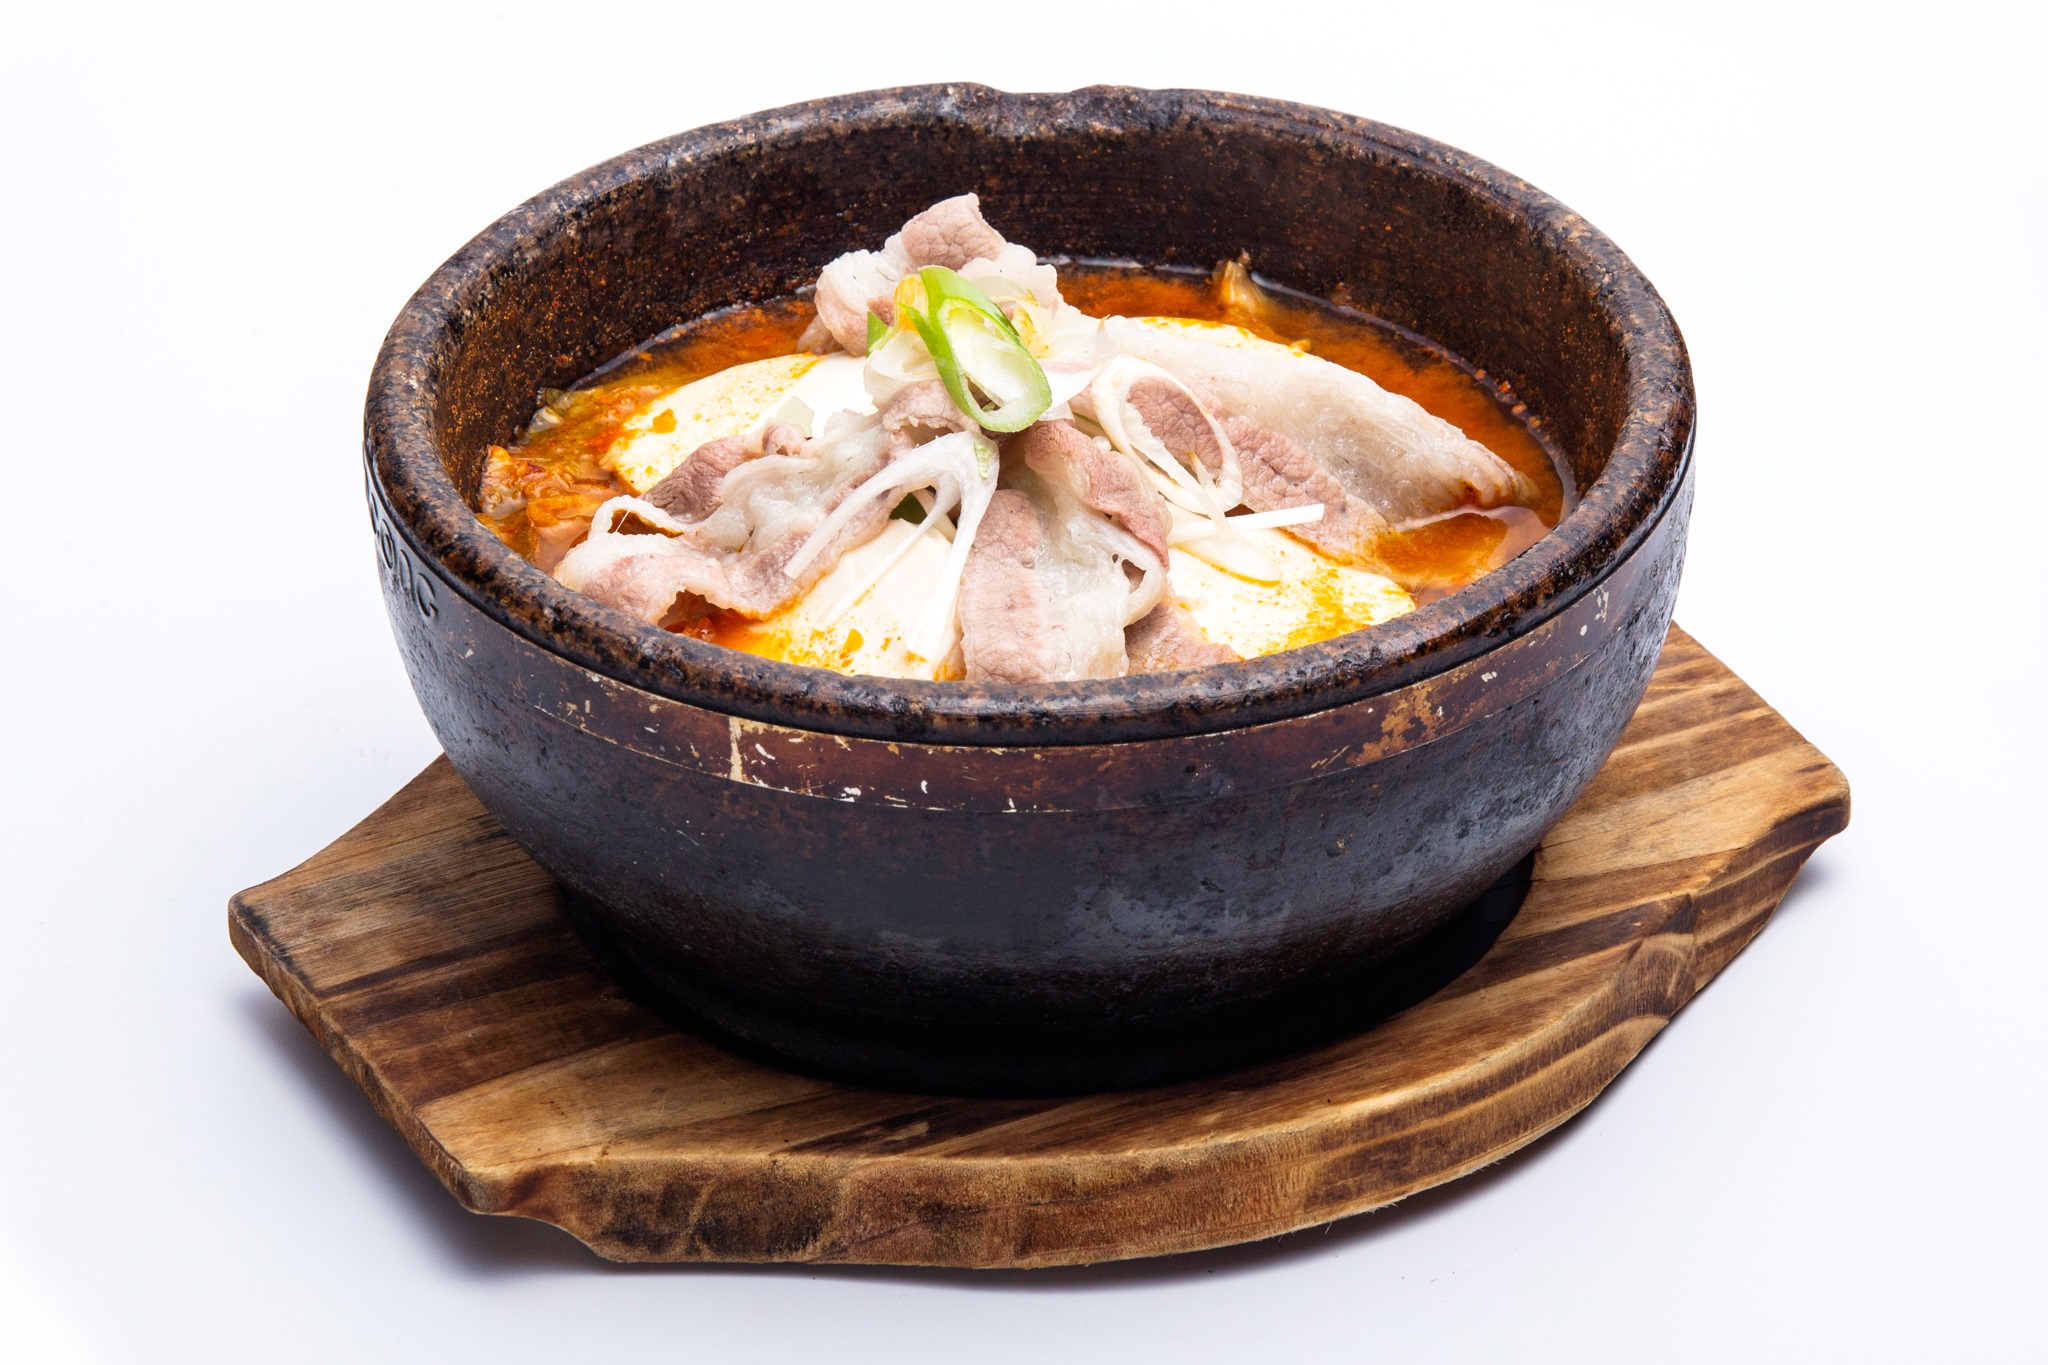 The Jeju BBQ & Hotpot Đà Lạt